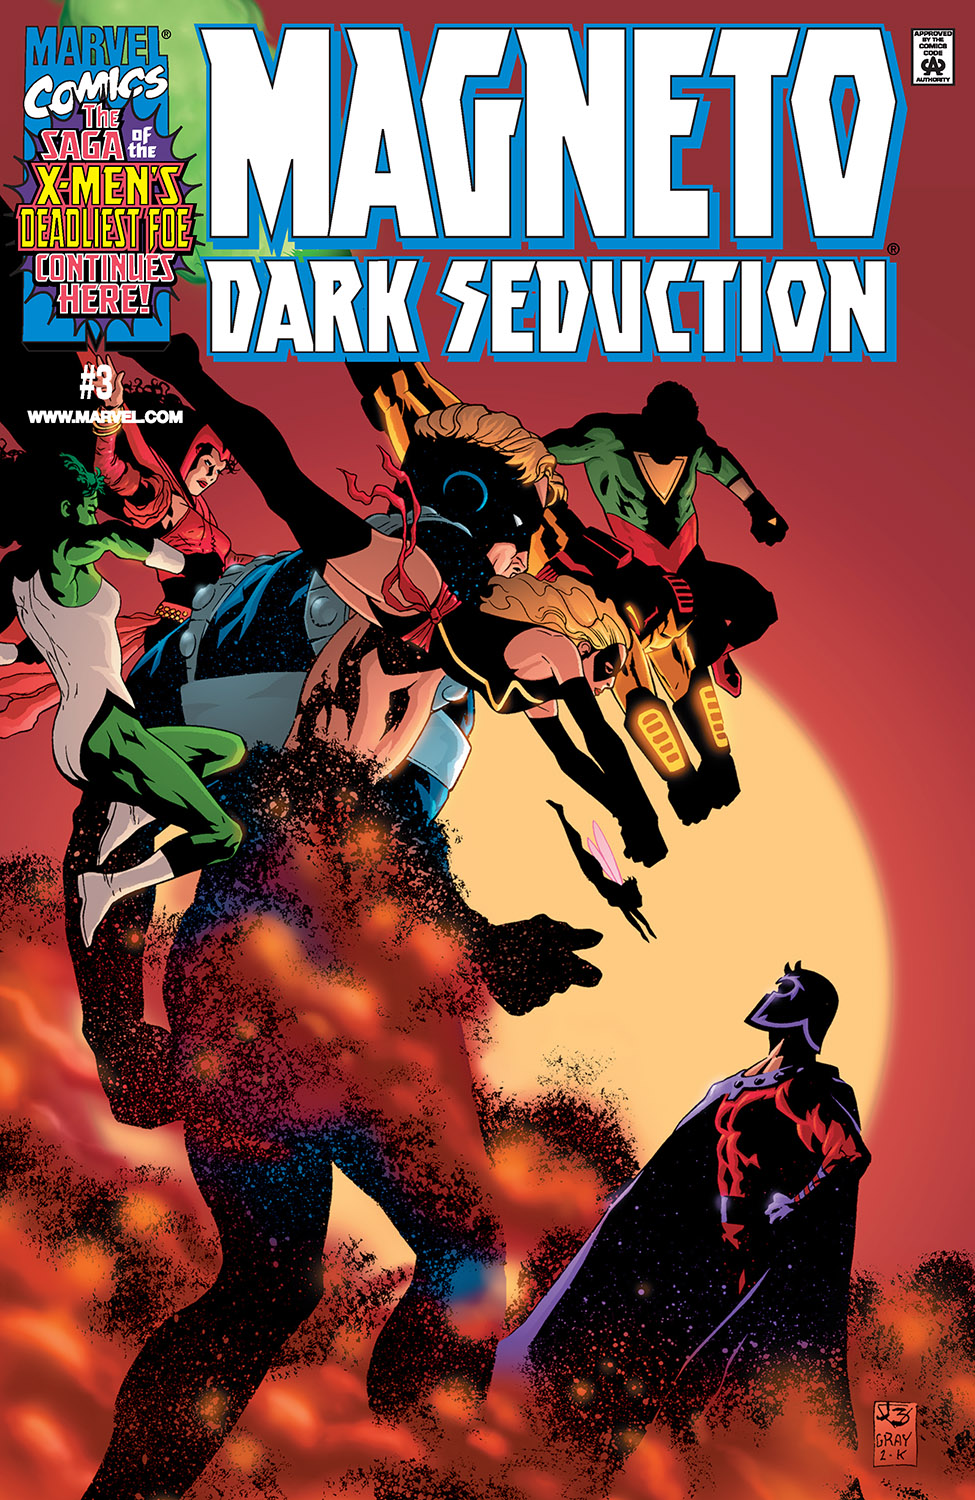 Magneto: Dark Seduction (2000) #3